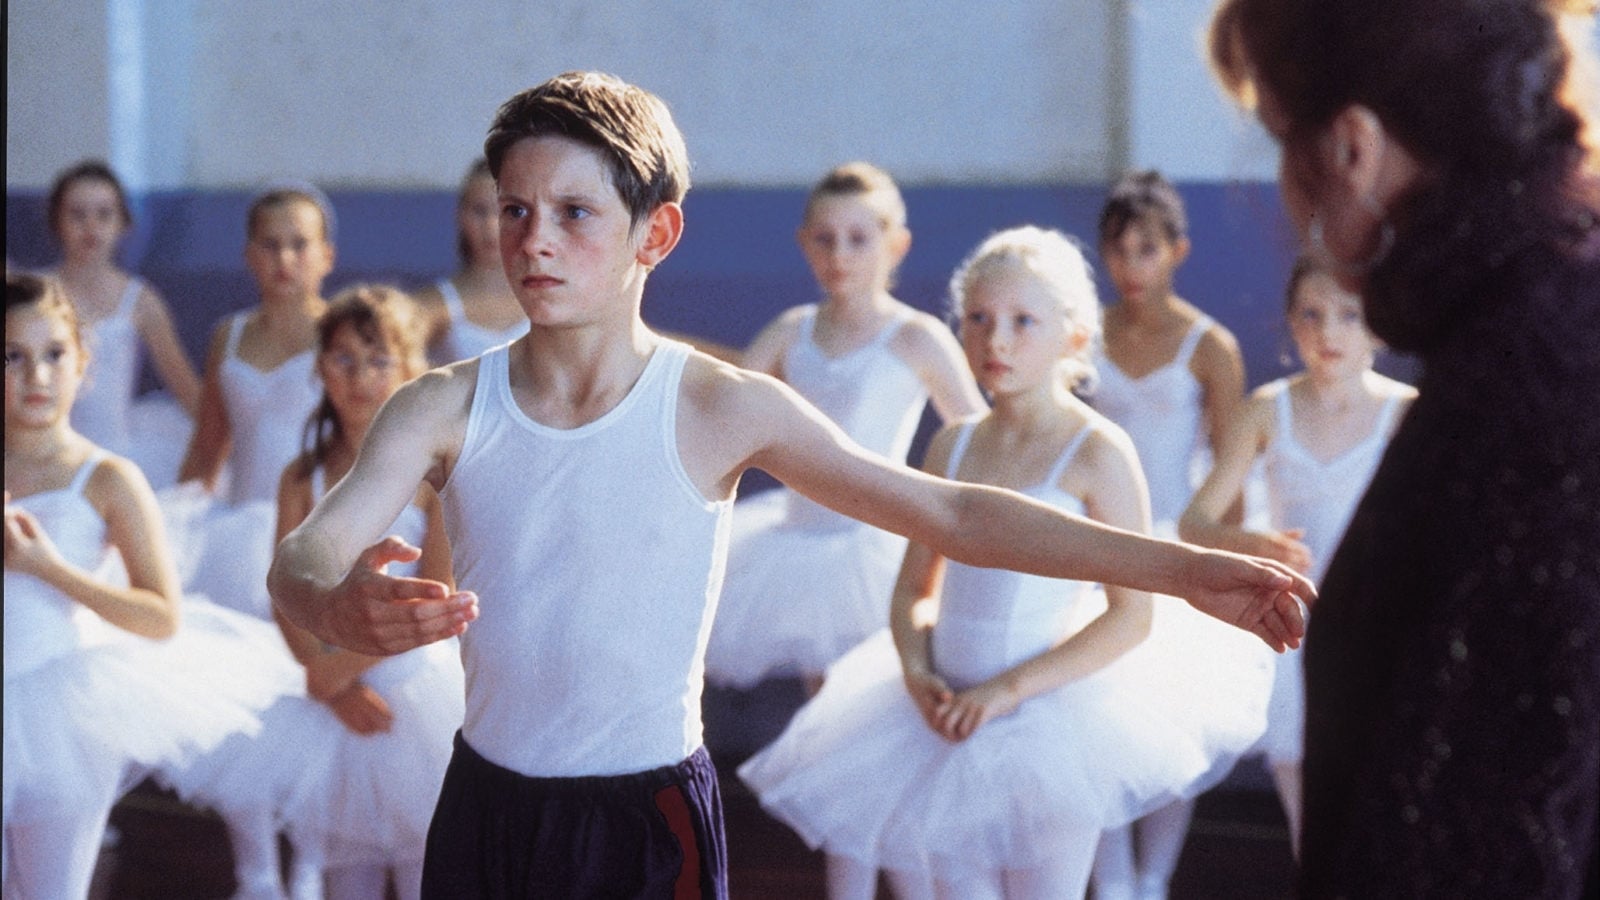 Billy Elliot (Quiero bailar) (2000)